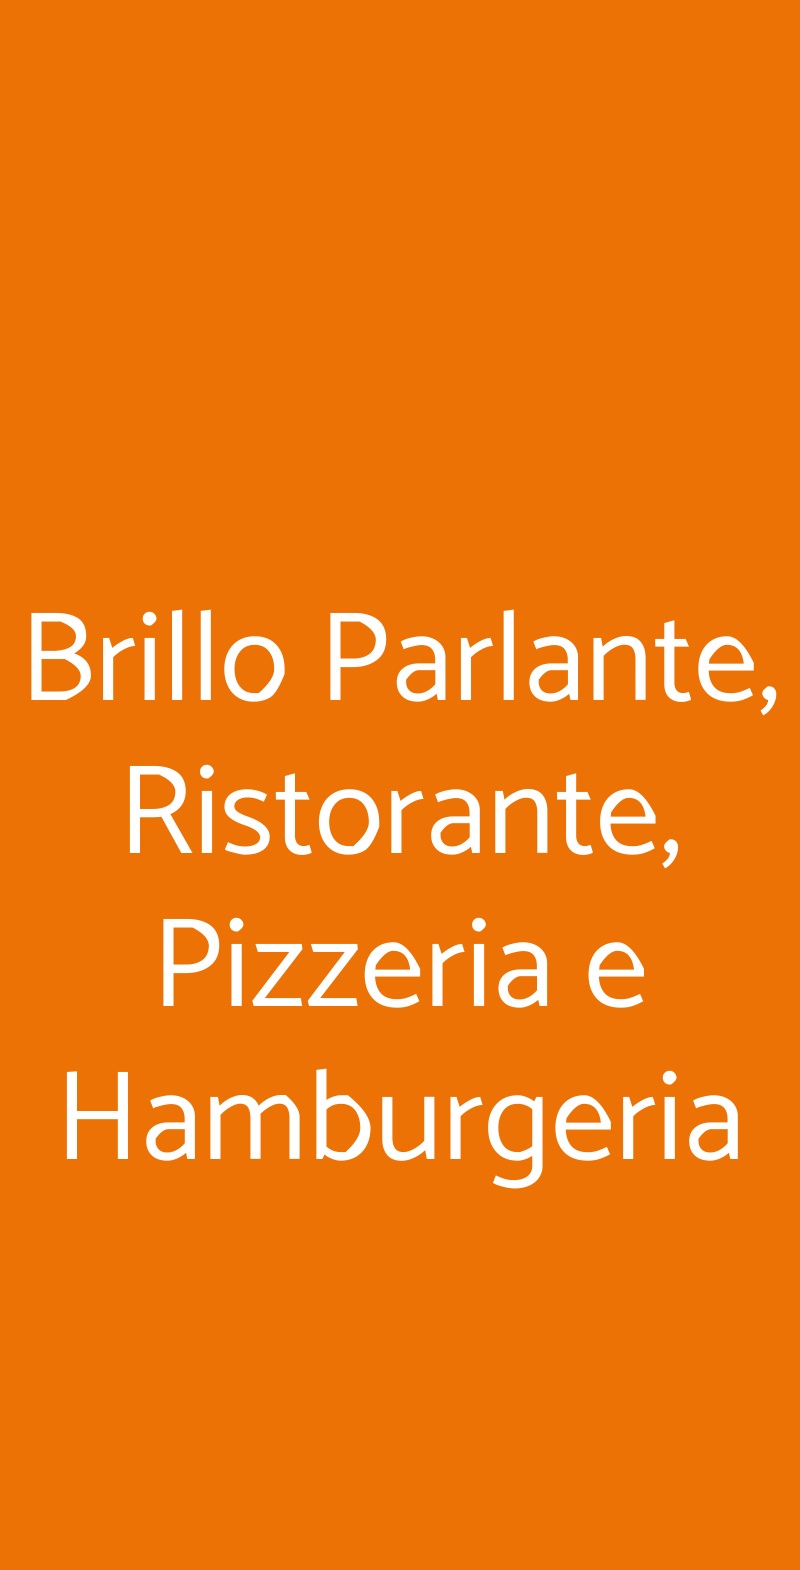 Brillo Parlante, Ristorante, Pizzeria e Hamburgeria Roma menù 1 pagina